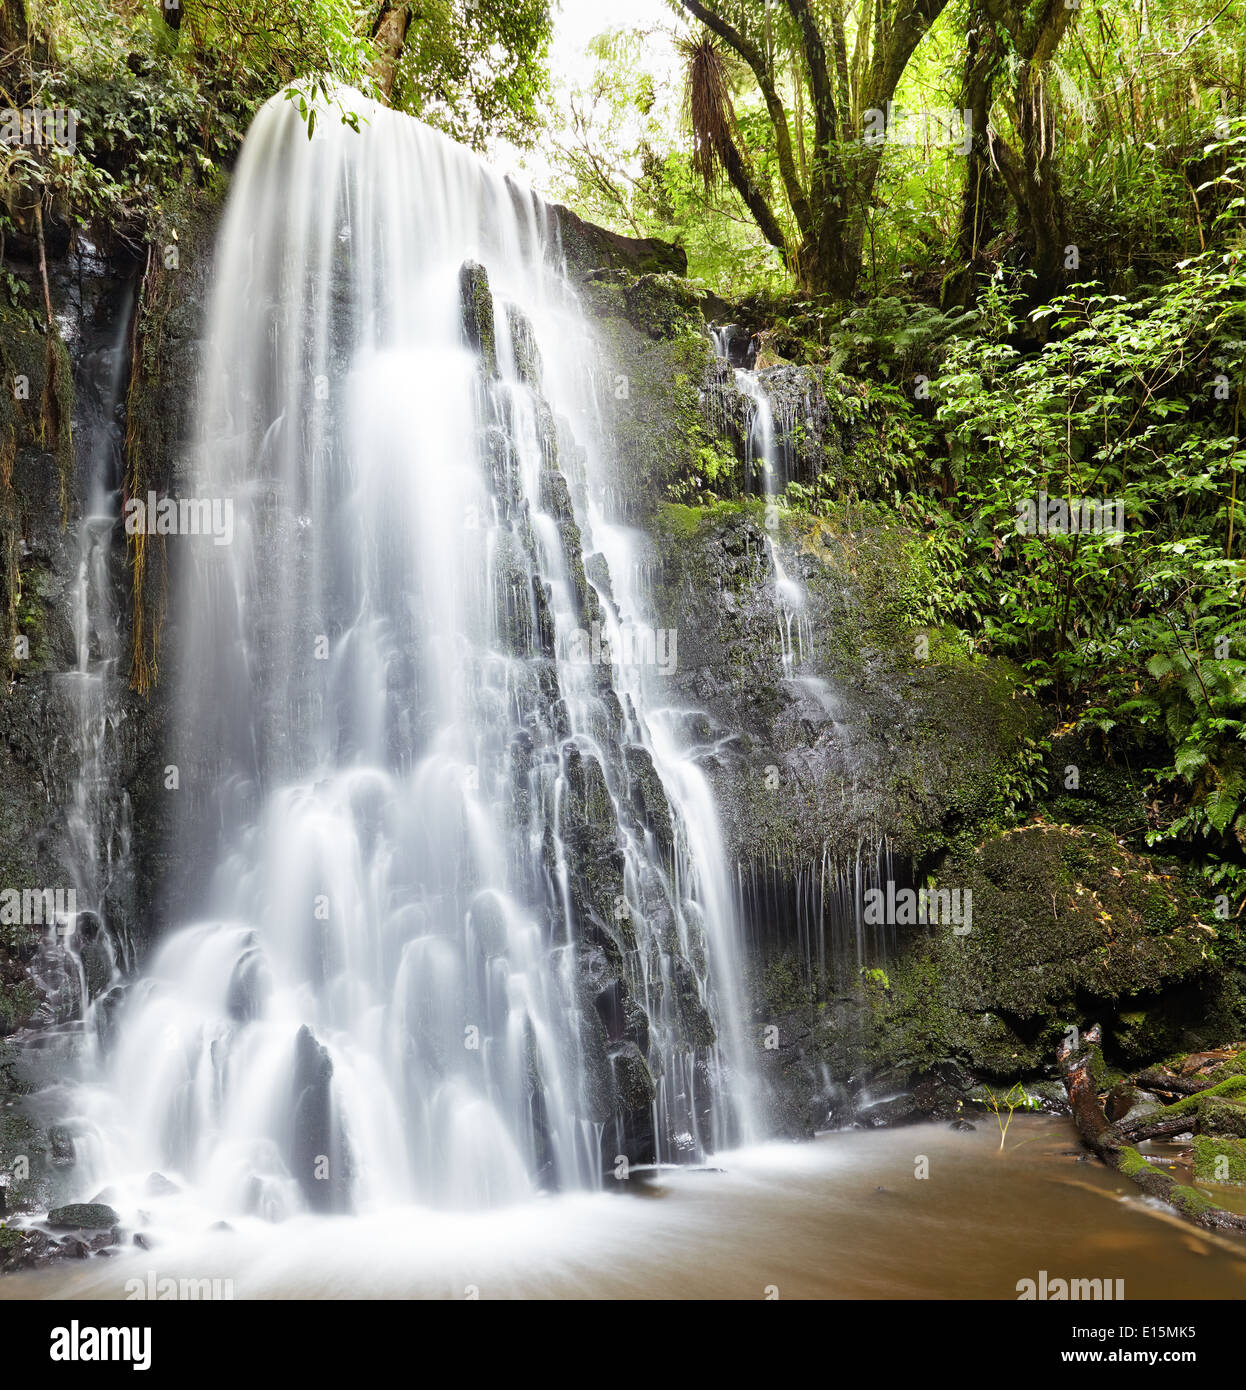 Matai Falls, South Island, New Zealand Stock Photo